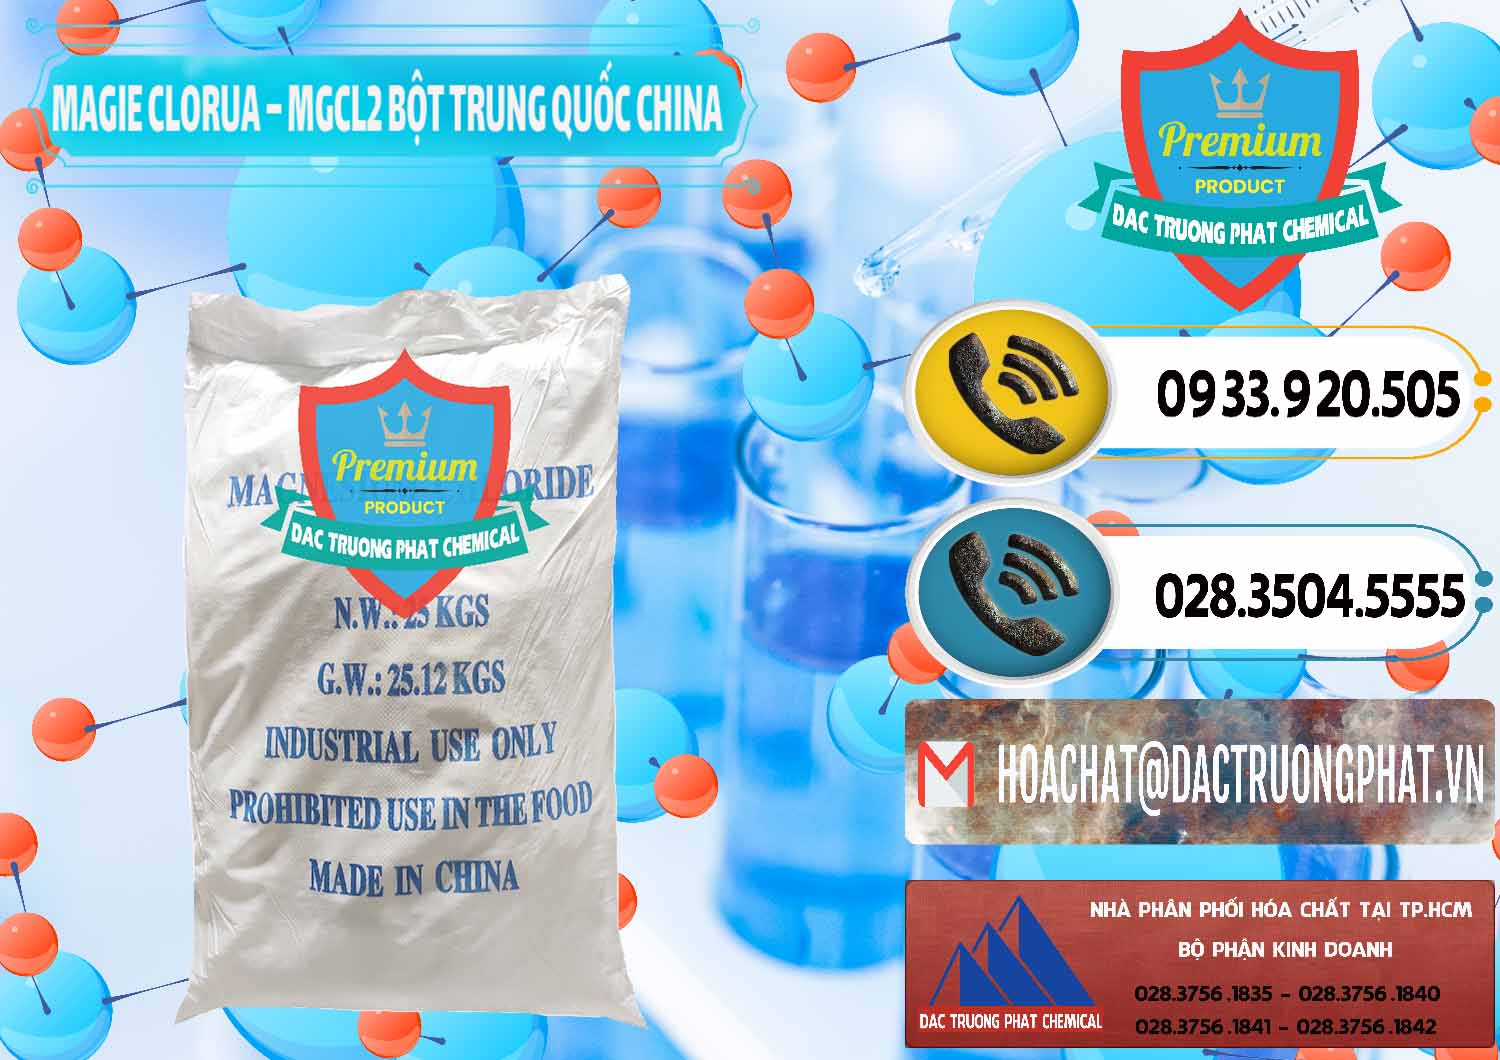 Chuyên cung cấp và bán Magie Clorua – MGCL2 96% Dạng Bột Bao Chữ Xanh Trung Quốc China - 0207 - Công ty chuyên nhập khẩu ( cung cấp ) hóa chất tại TP.HCM - hoachatdetnhuom.vn